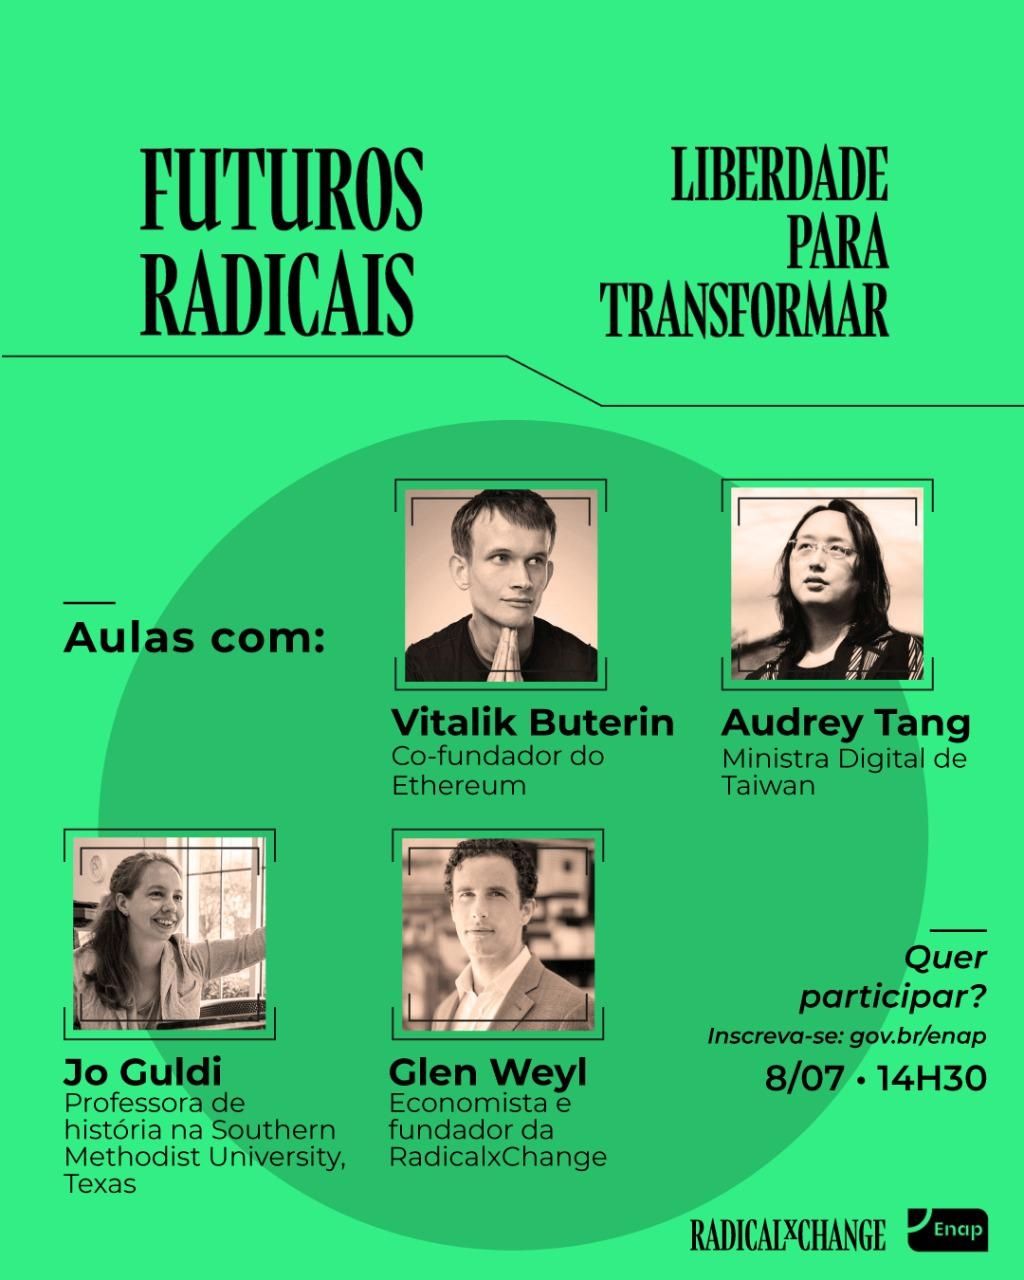 Evento Futuros Radicais - Liberdade para transformar